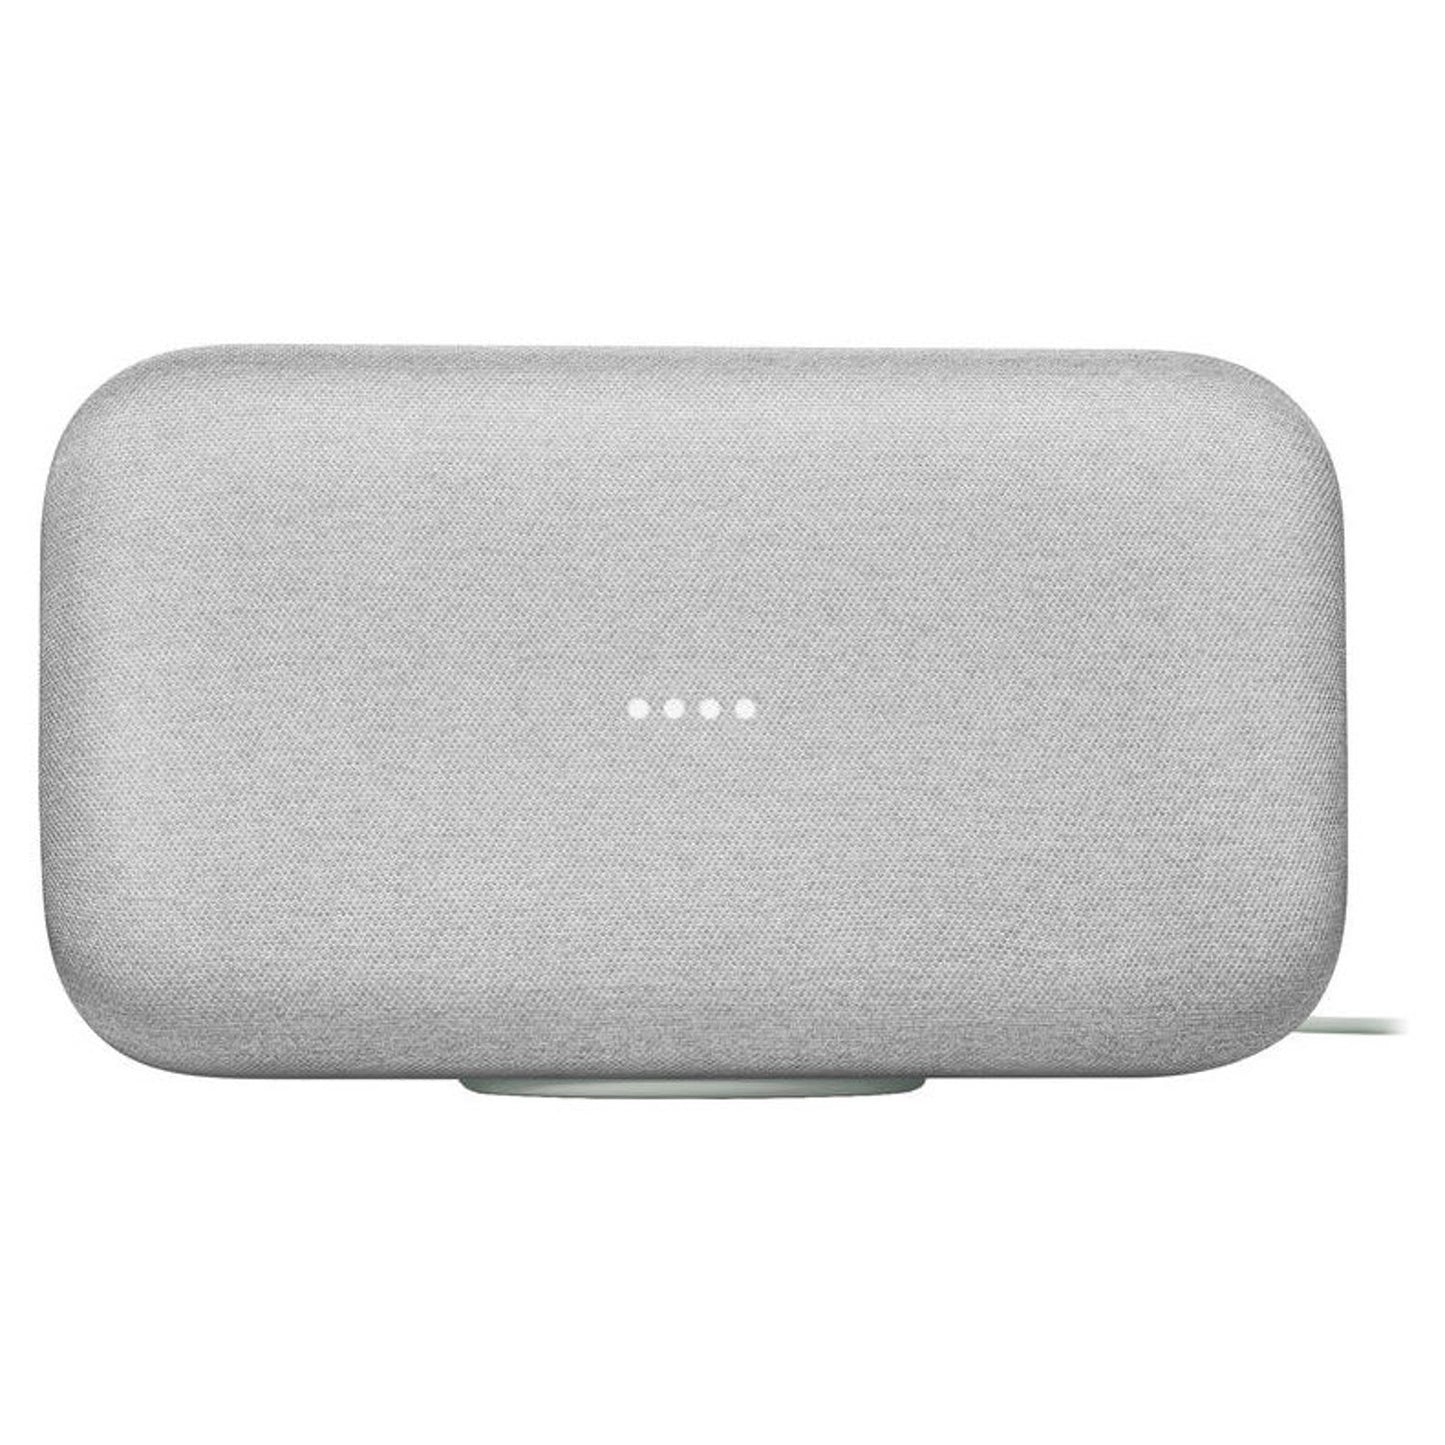 Google Home Max Speaker